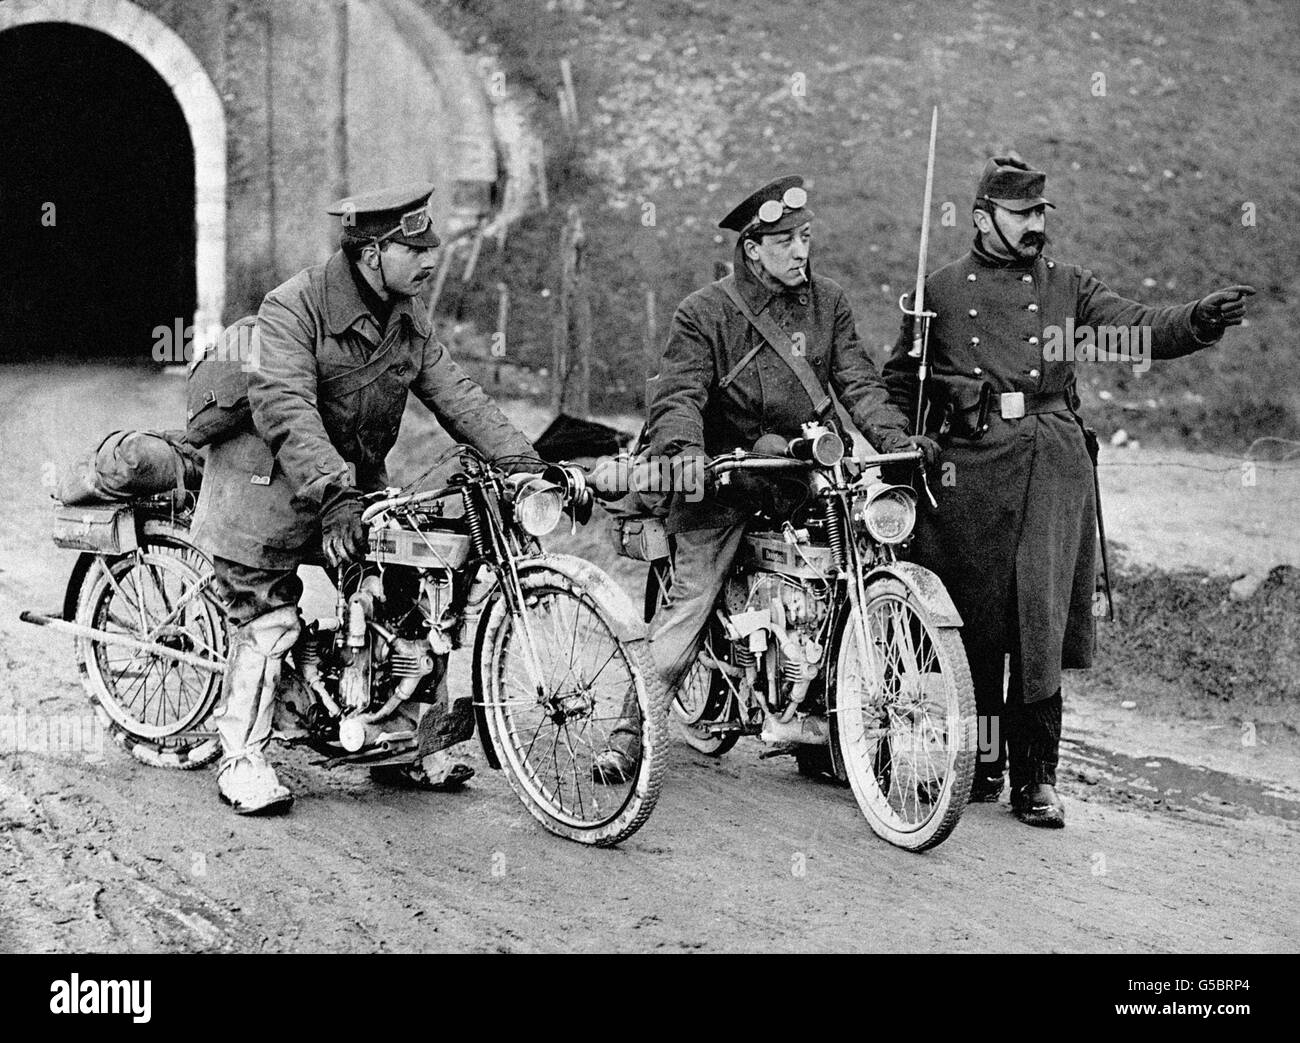 Motorradfahrer der British Expeditionary Force (BEF) auf Douglas 349-ccm-Motorrädern werden von einem französischen Wachdienst an einem unbekannten Ort in Nordfrankreich Anweisungen gegeben. Stockfoto